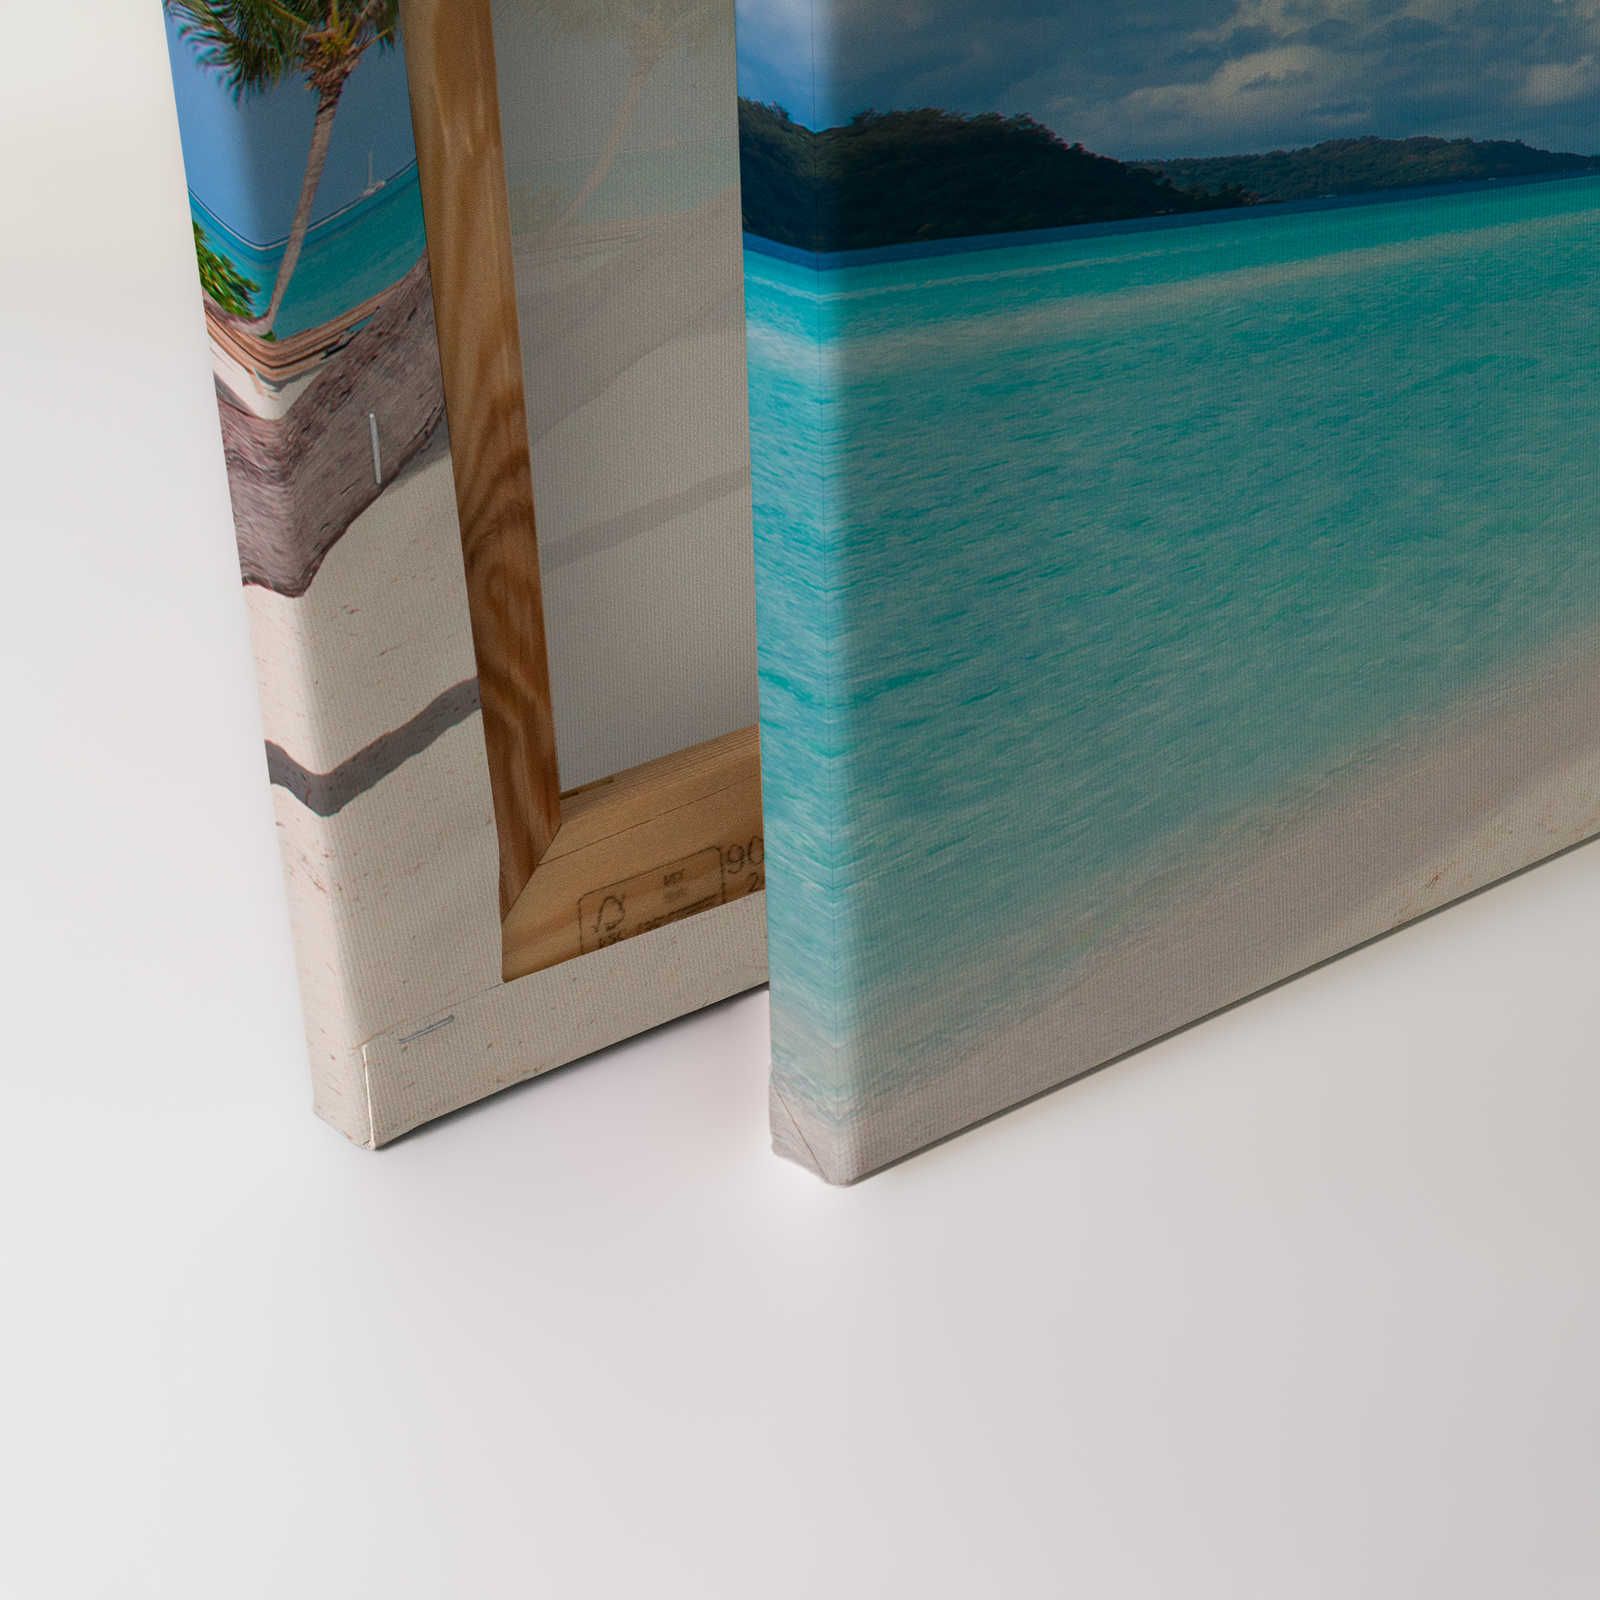             Lienzo Playa idílica con agua cristalina y palmeras - 0,90 m x 0,60 m
        